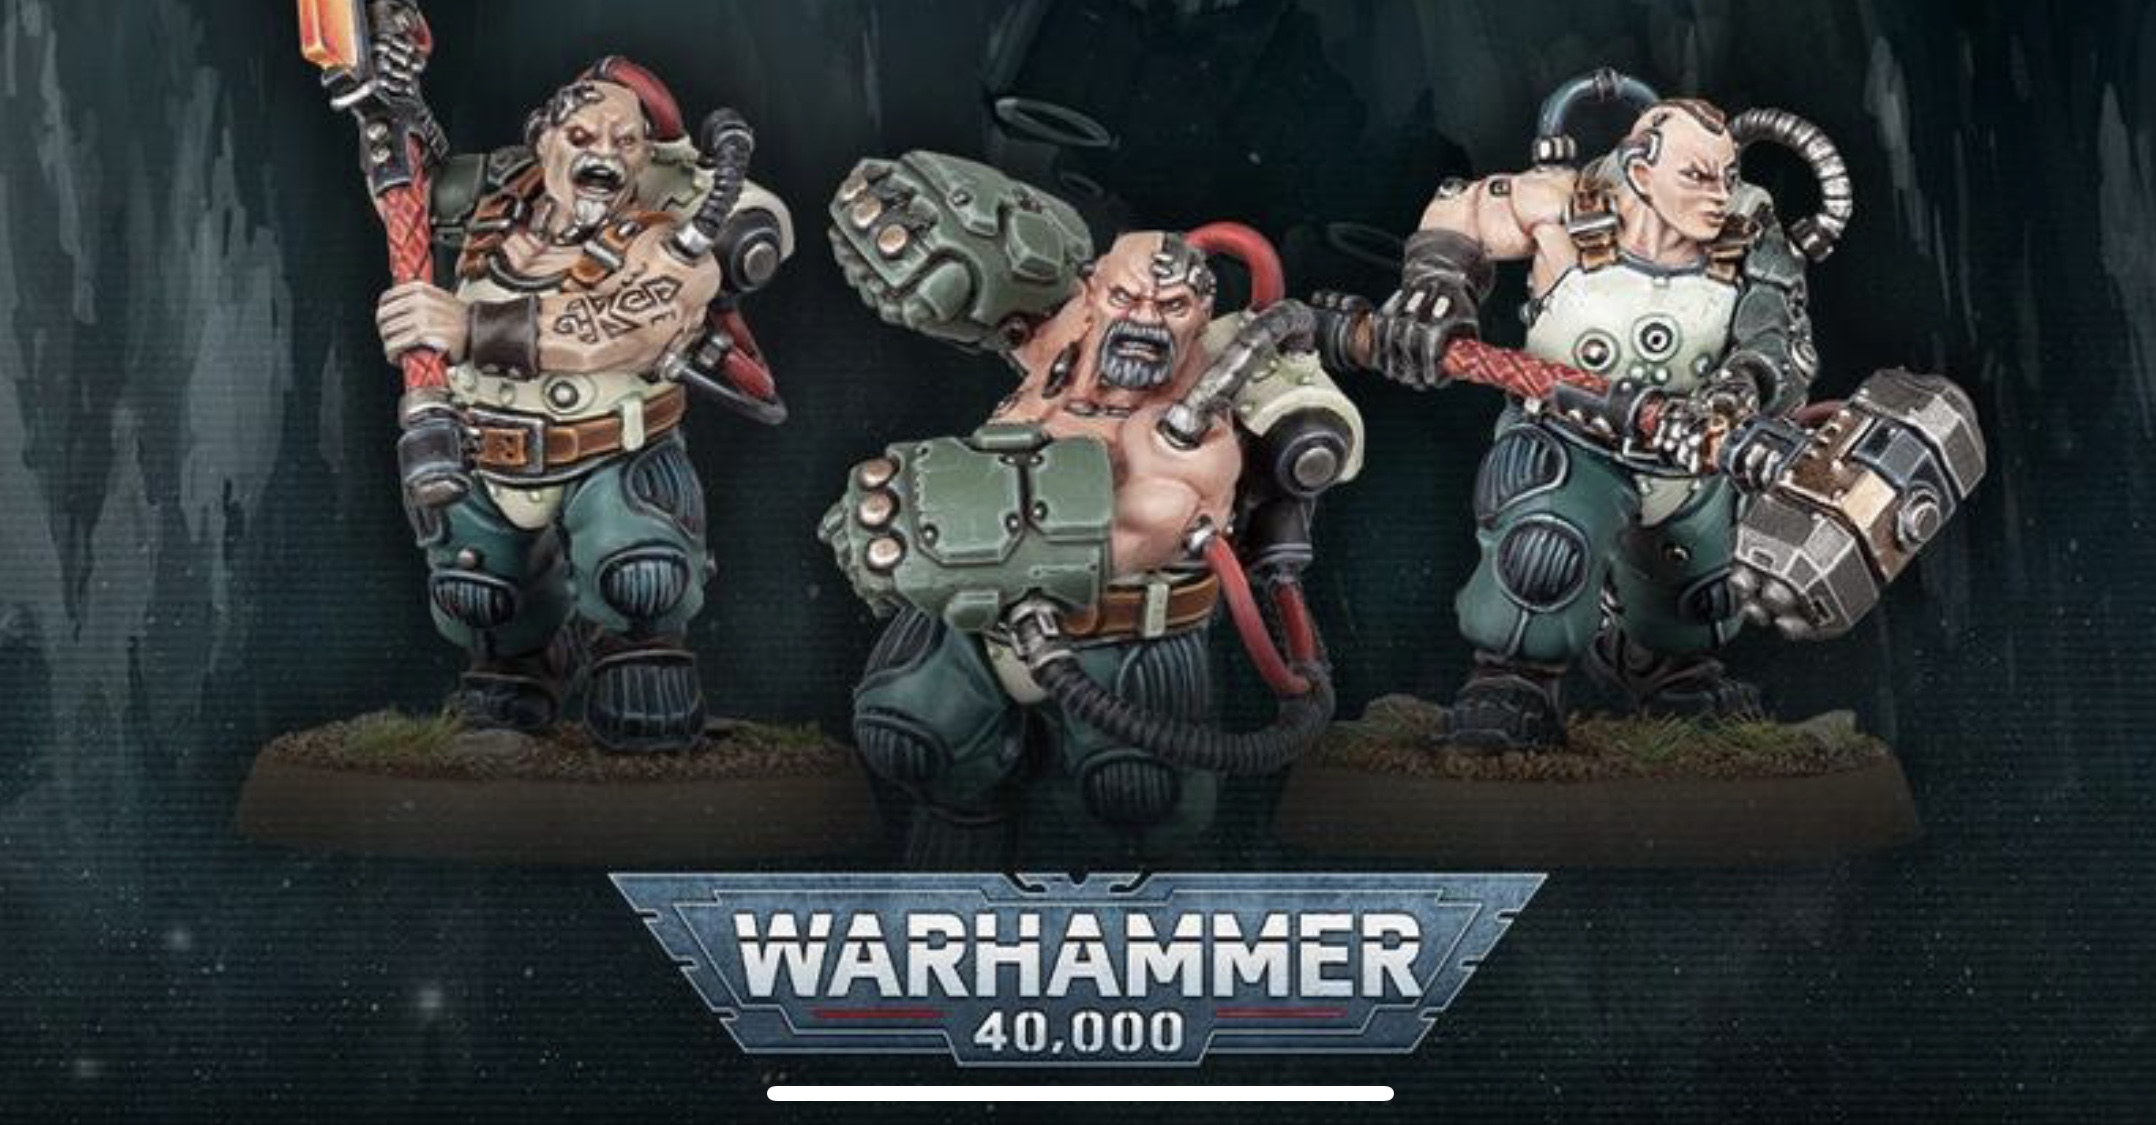 Leagues of Votann Full Reveal – Warhammer 40,000 